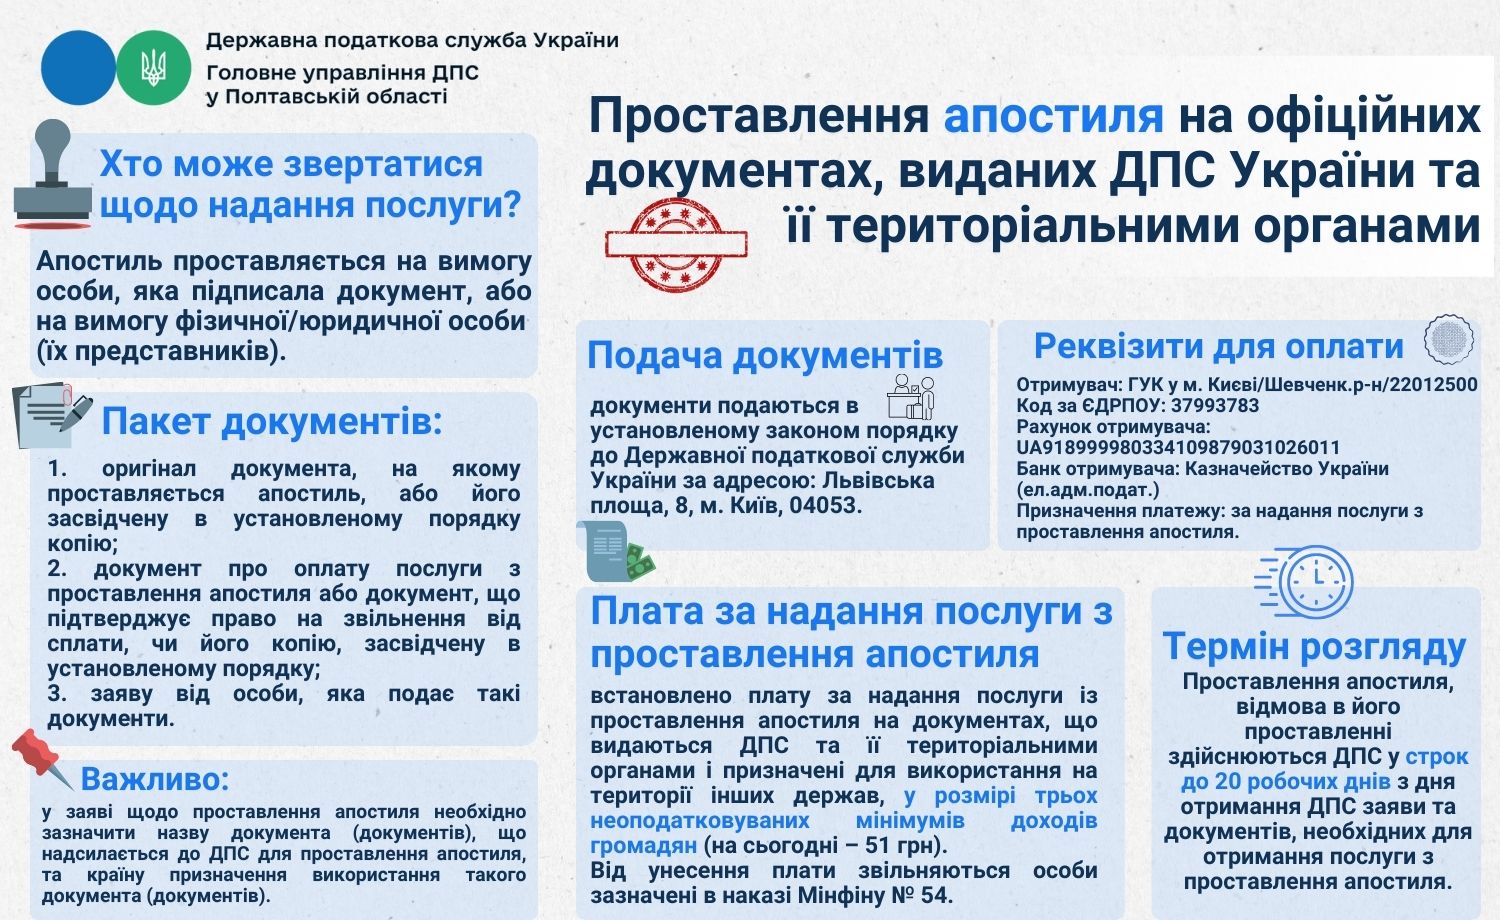 Надання послуги з проставлення апостиля на офіційних документах, виданих Державною податковою службою України та її територіальними органами